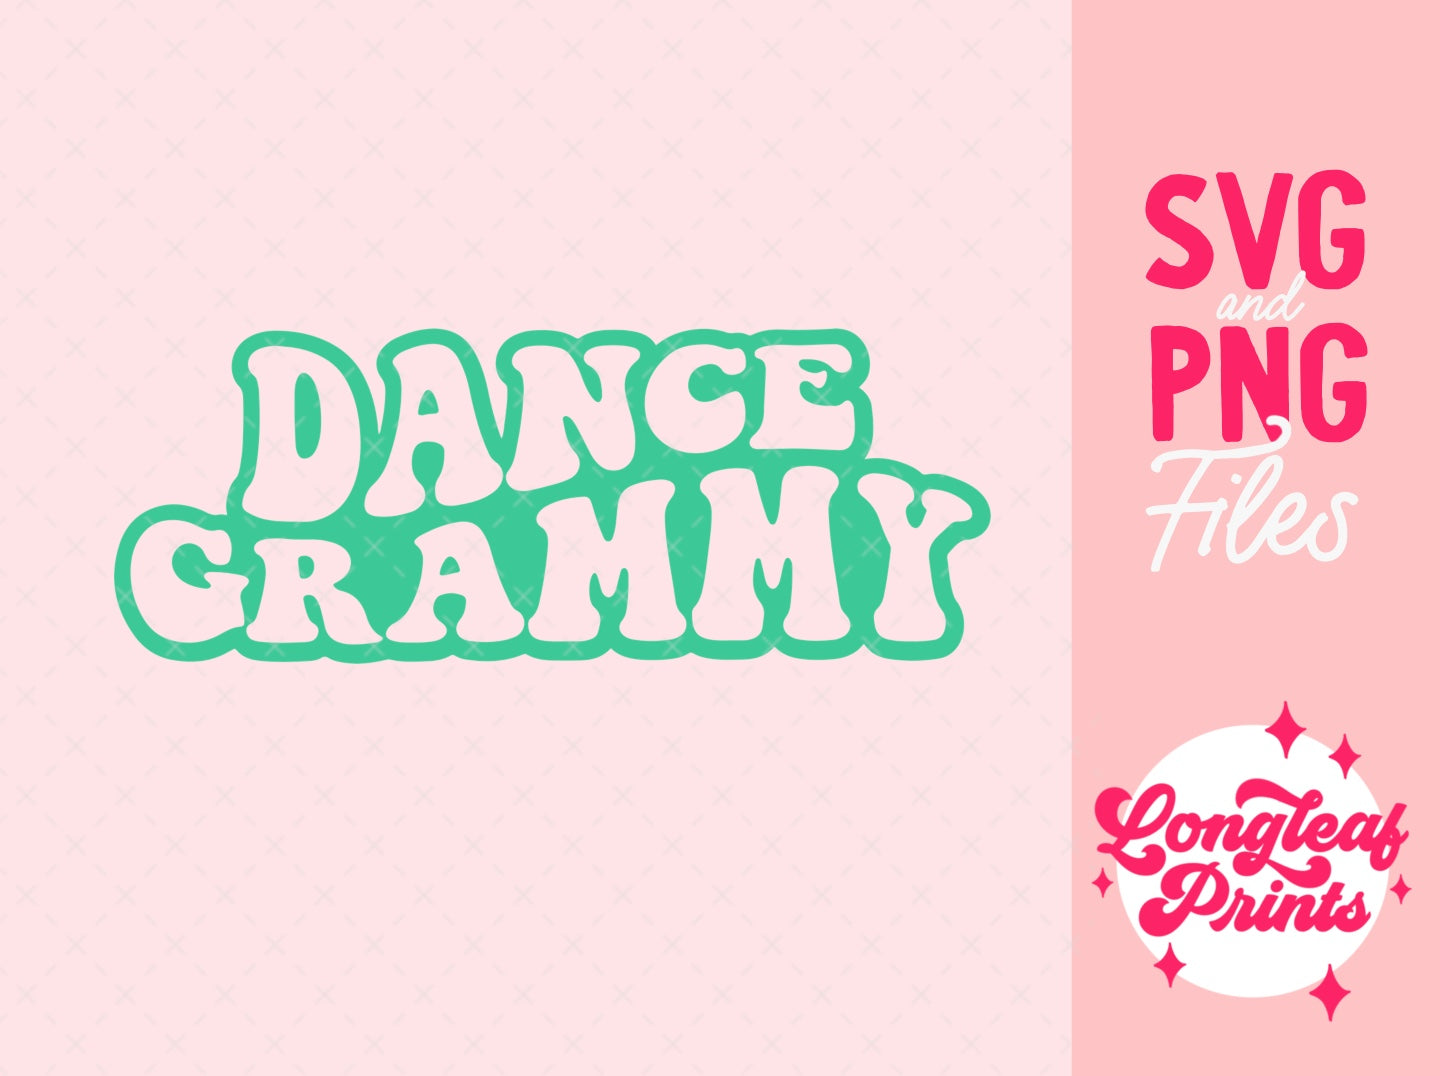 Dance Grammy Digital Download Design File